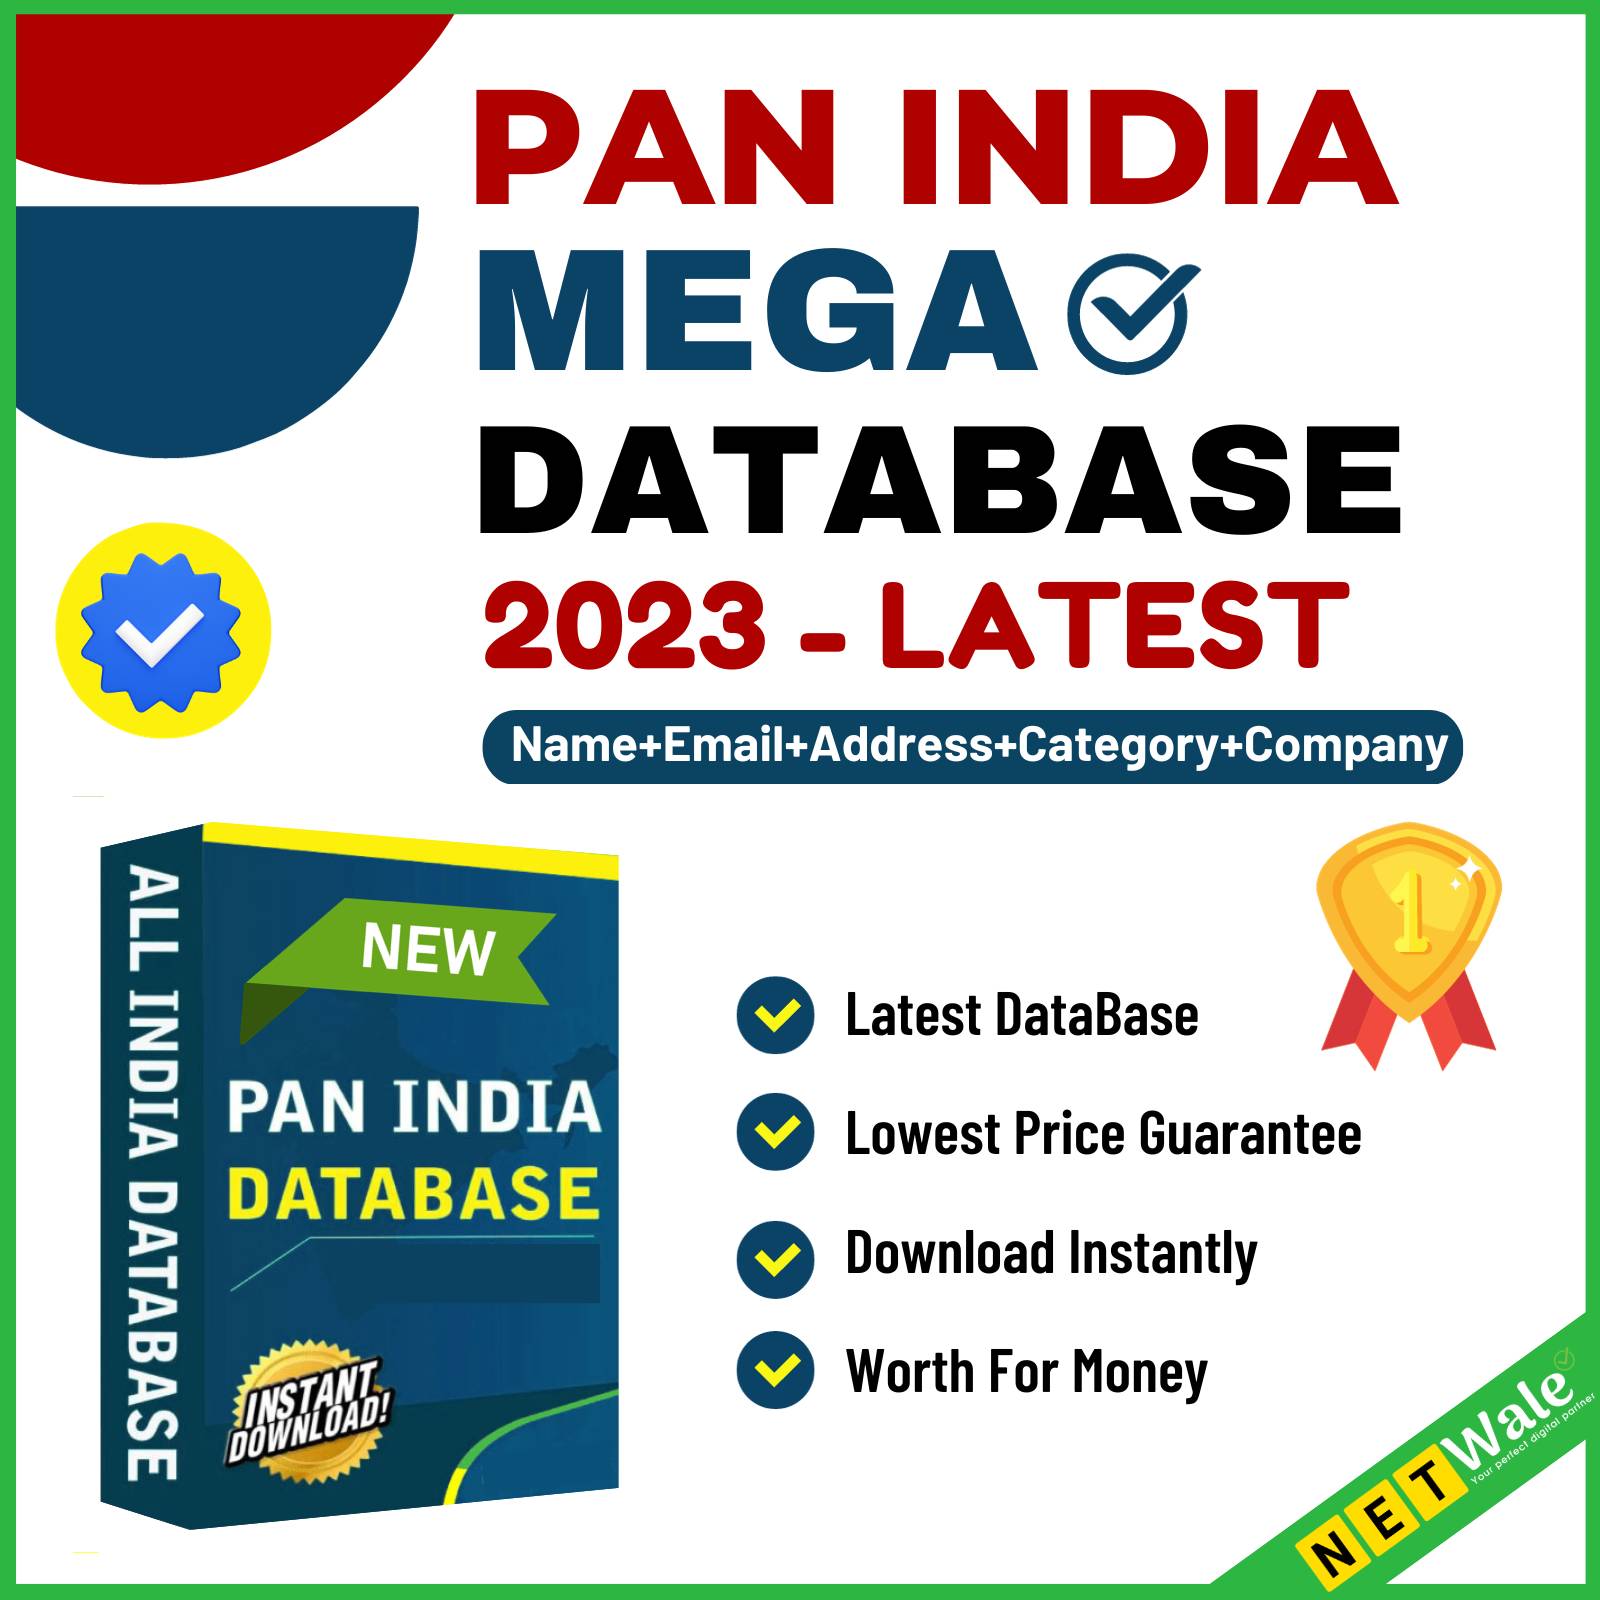 Mega Database 2023